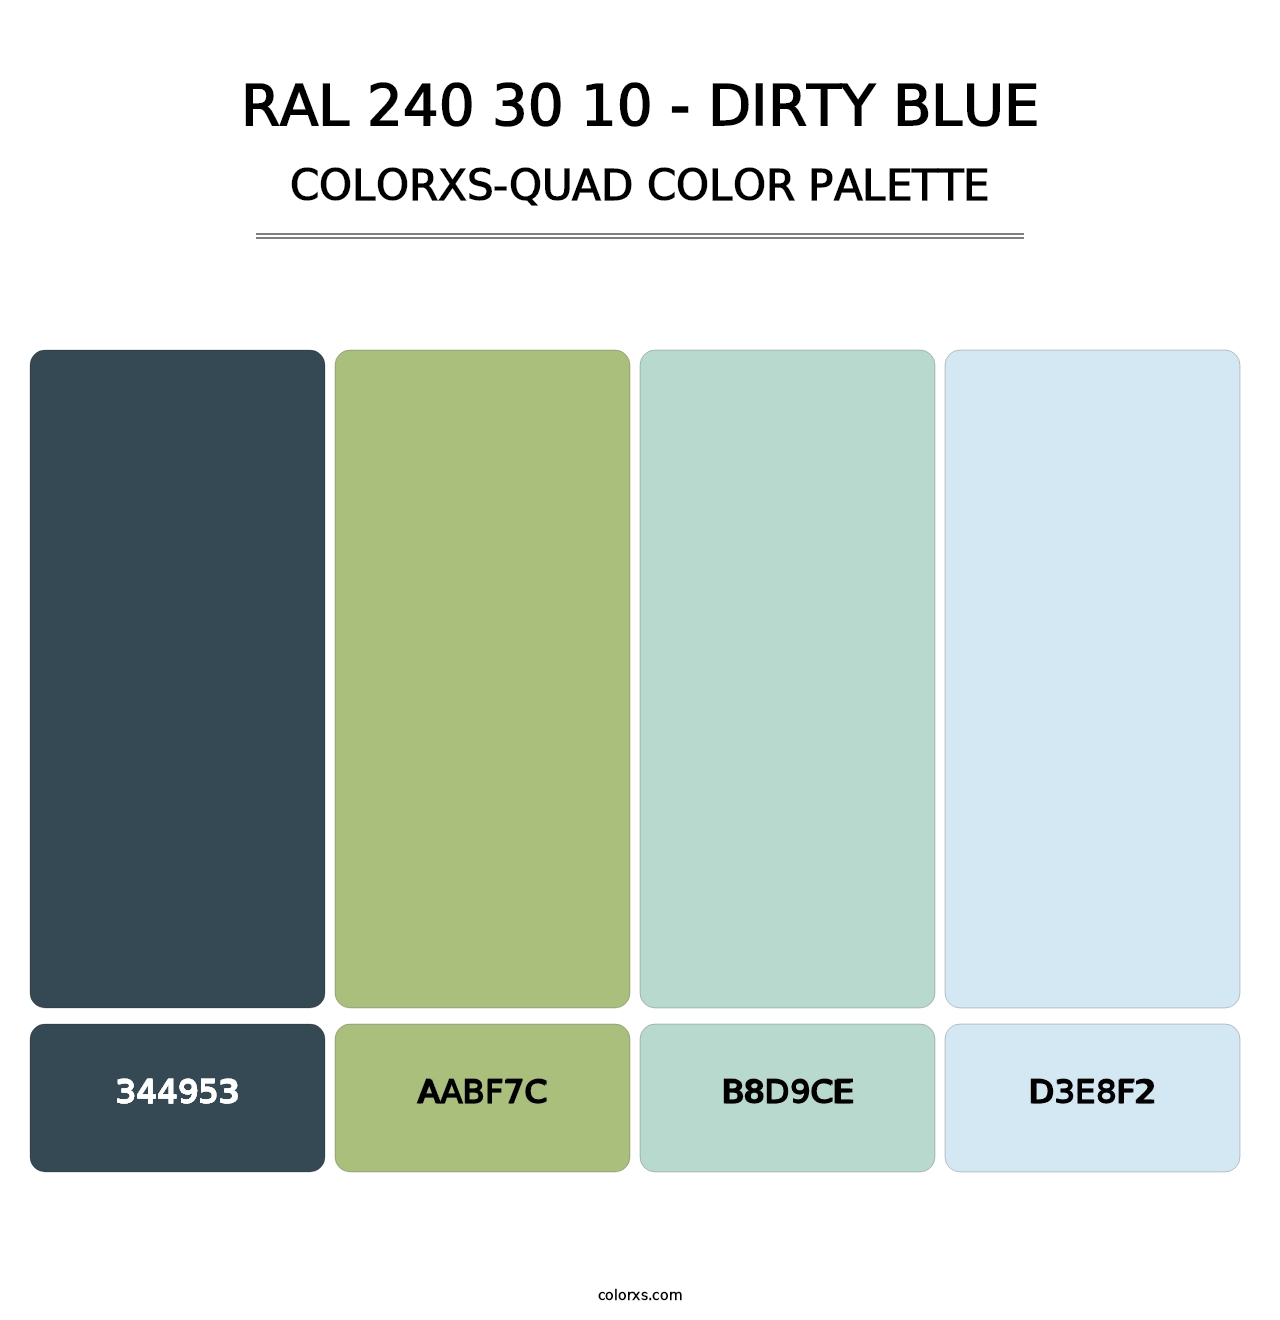 RAL 240 30 10 - Dirty Blue - Colorxs Quad Palette